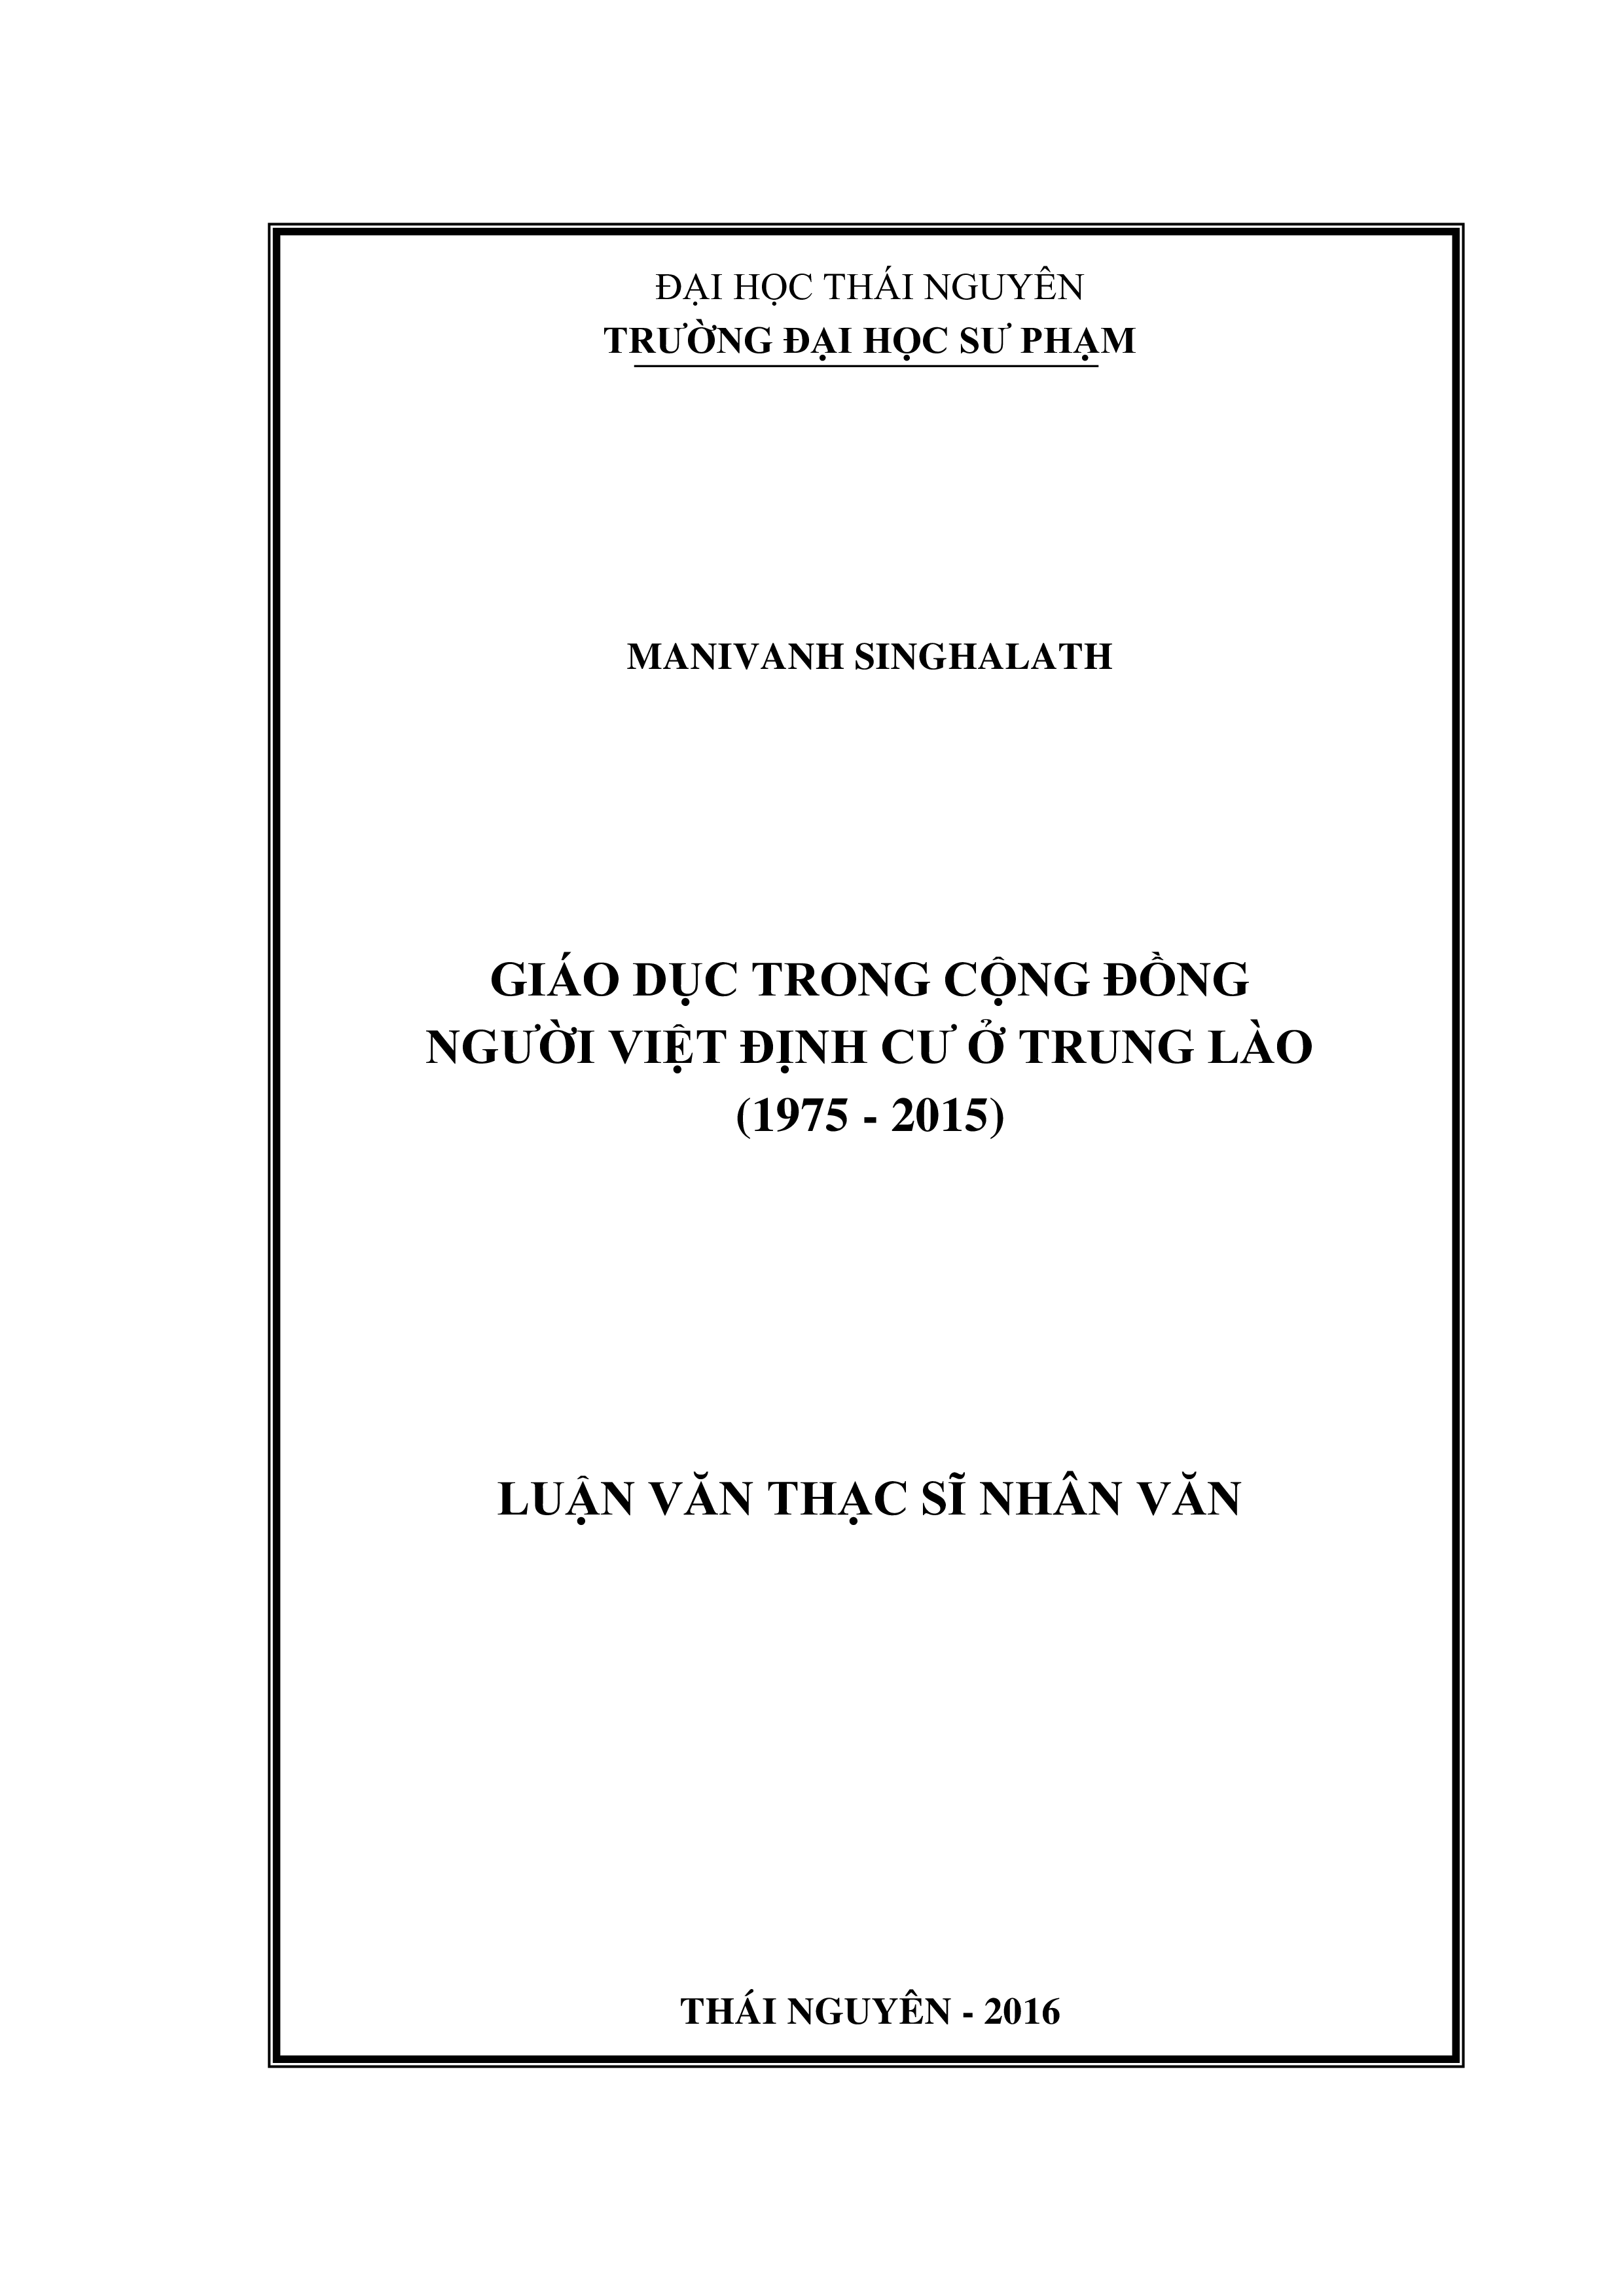 Giáo dục trong cộng đồng người Việt định cư ở trung Lào (1975-2015)